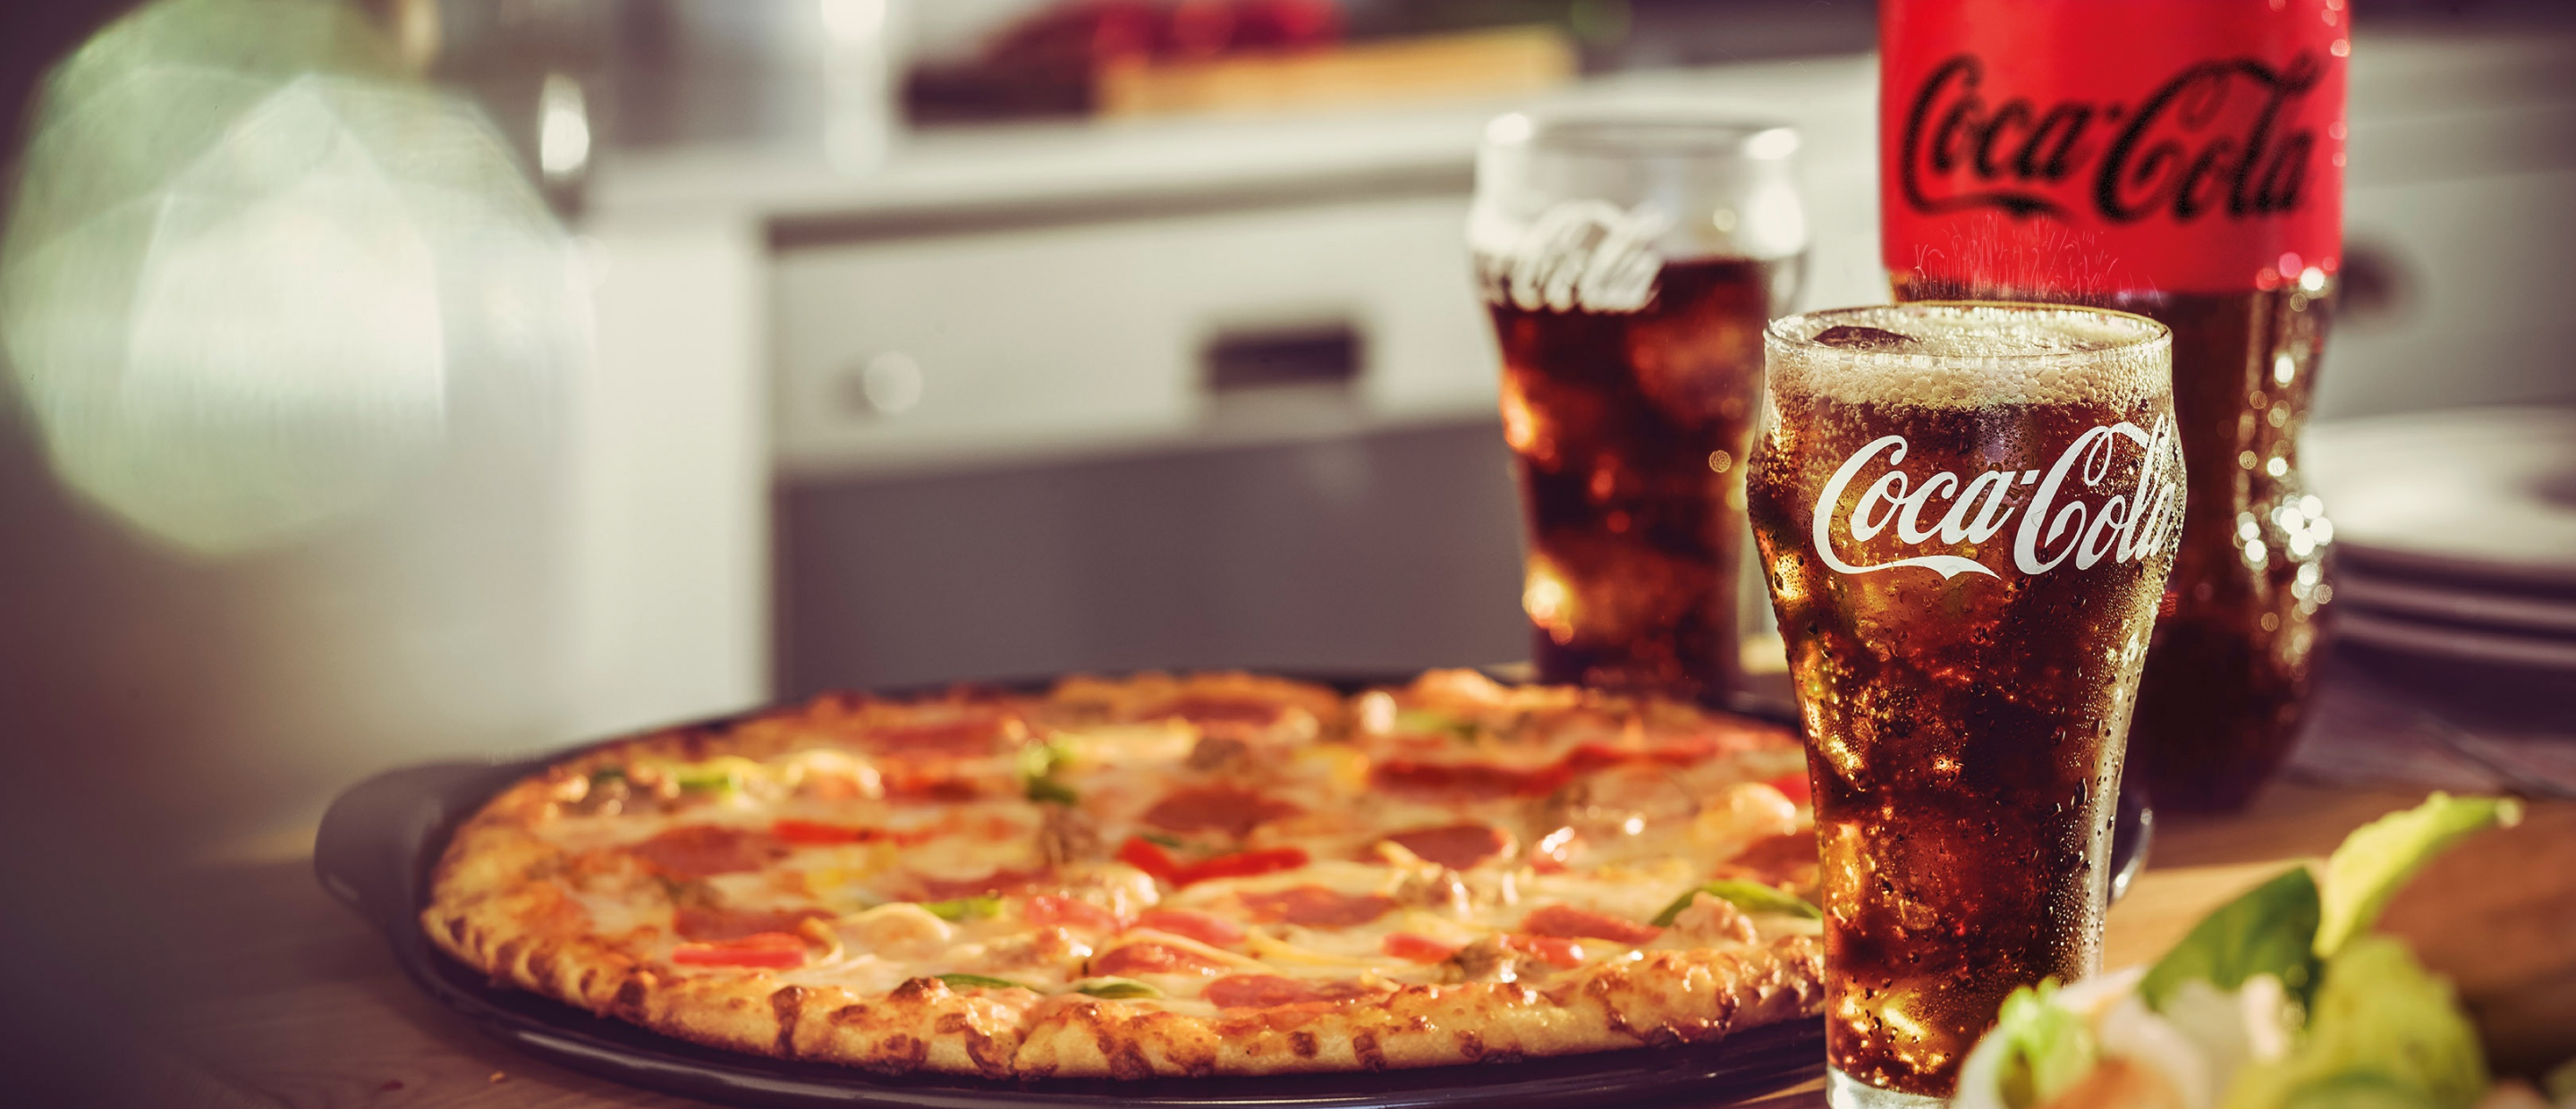 coca cola and pizza night